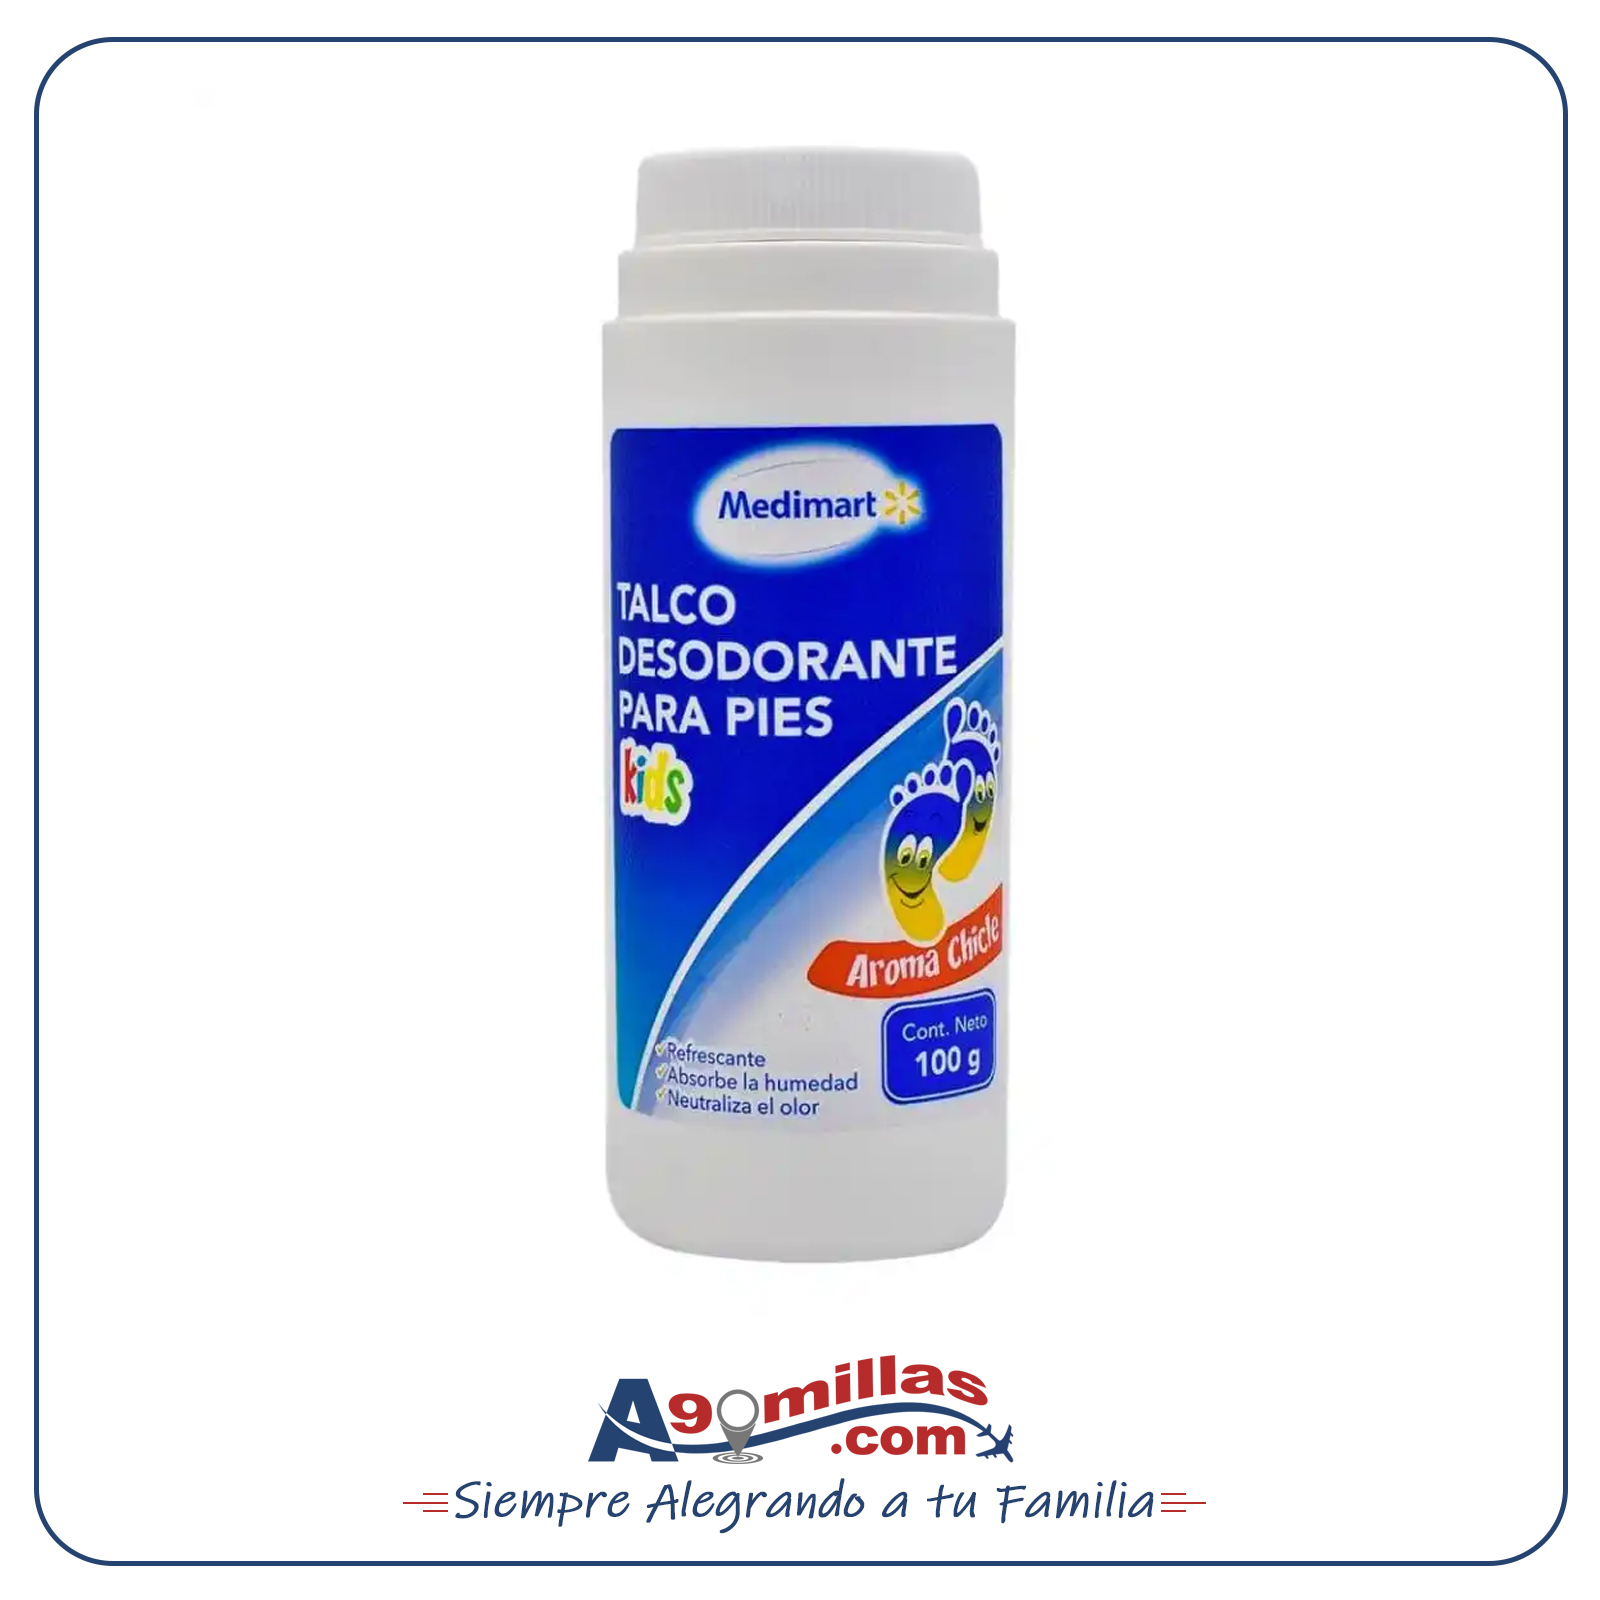 038 Talco Desodorante para Pies Medimart 100g